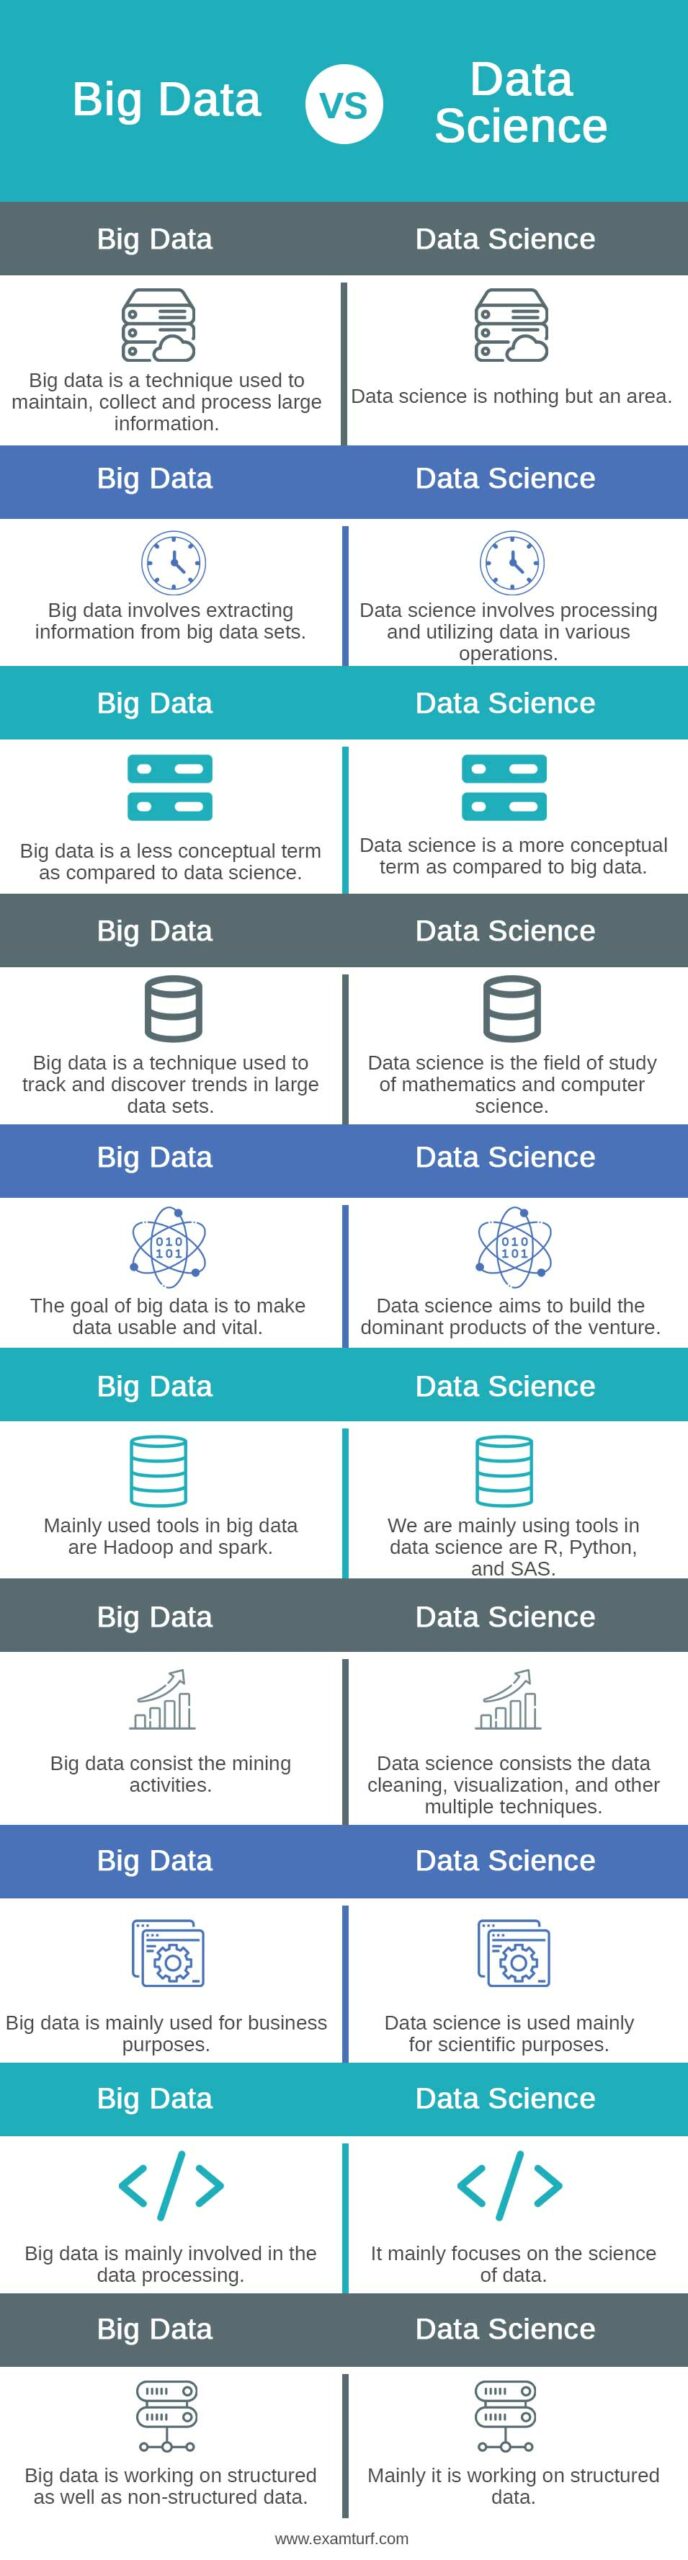 Big-Data-vs-Data-Science-info